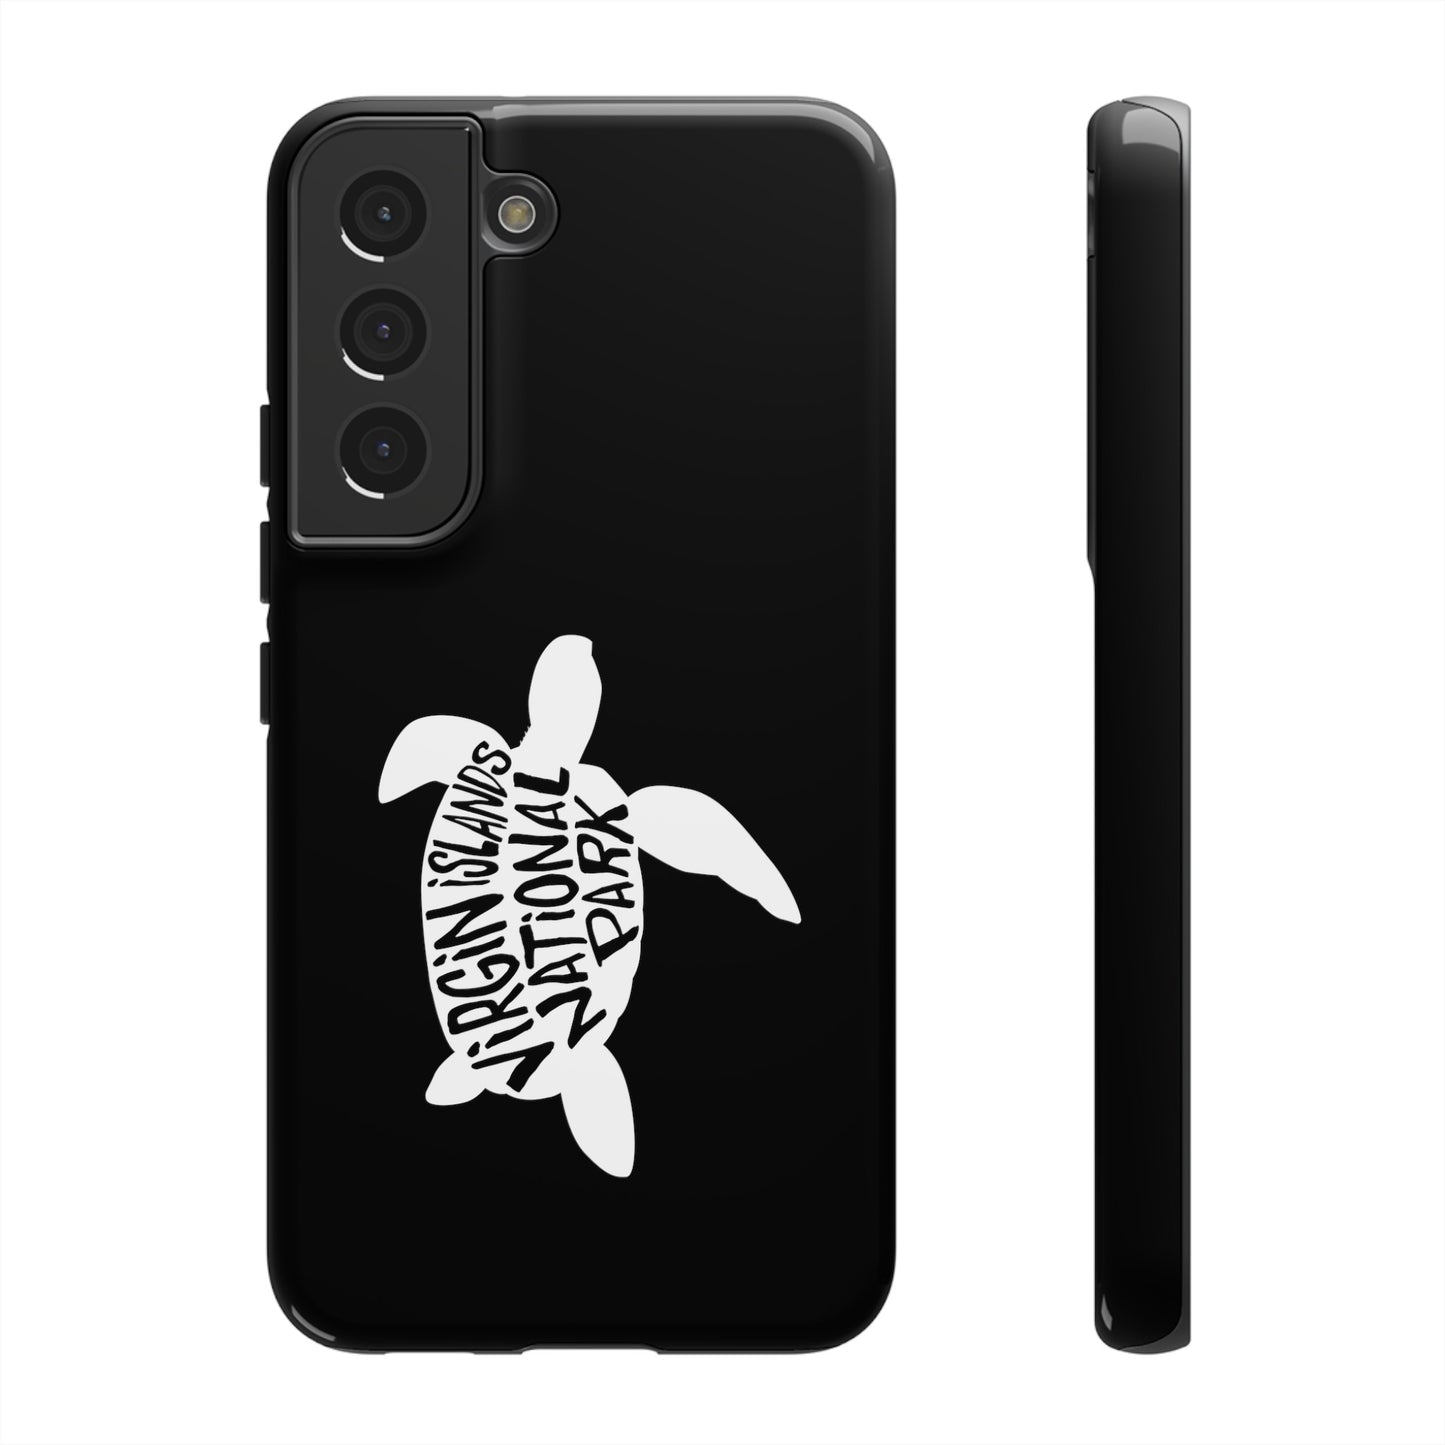 Virgin Islands National Park Phone Case - Turtle Design